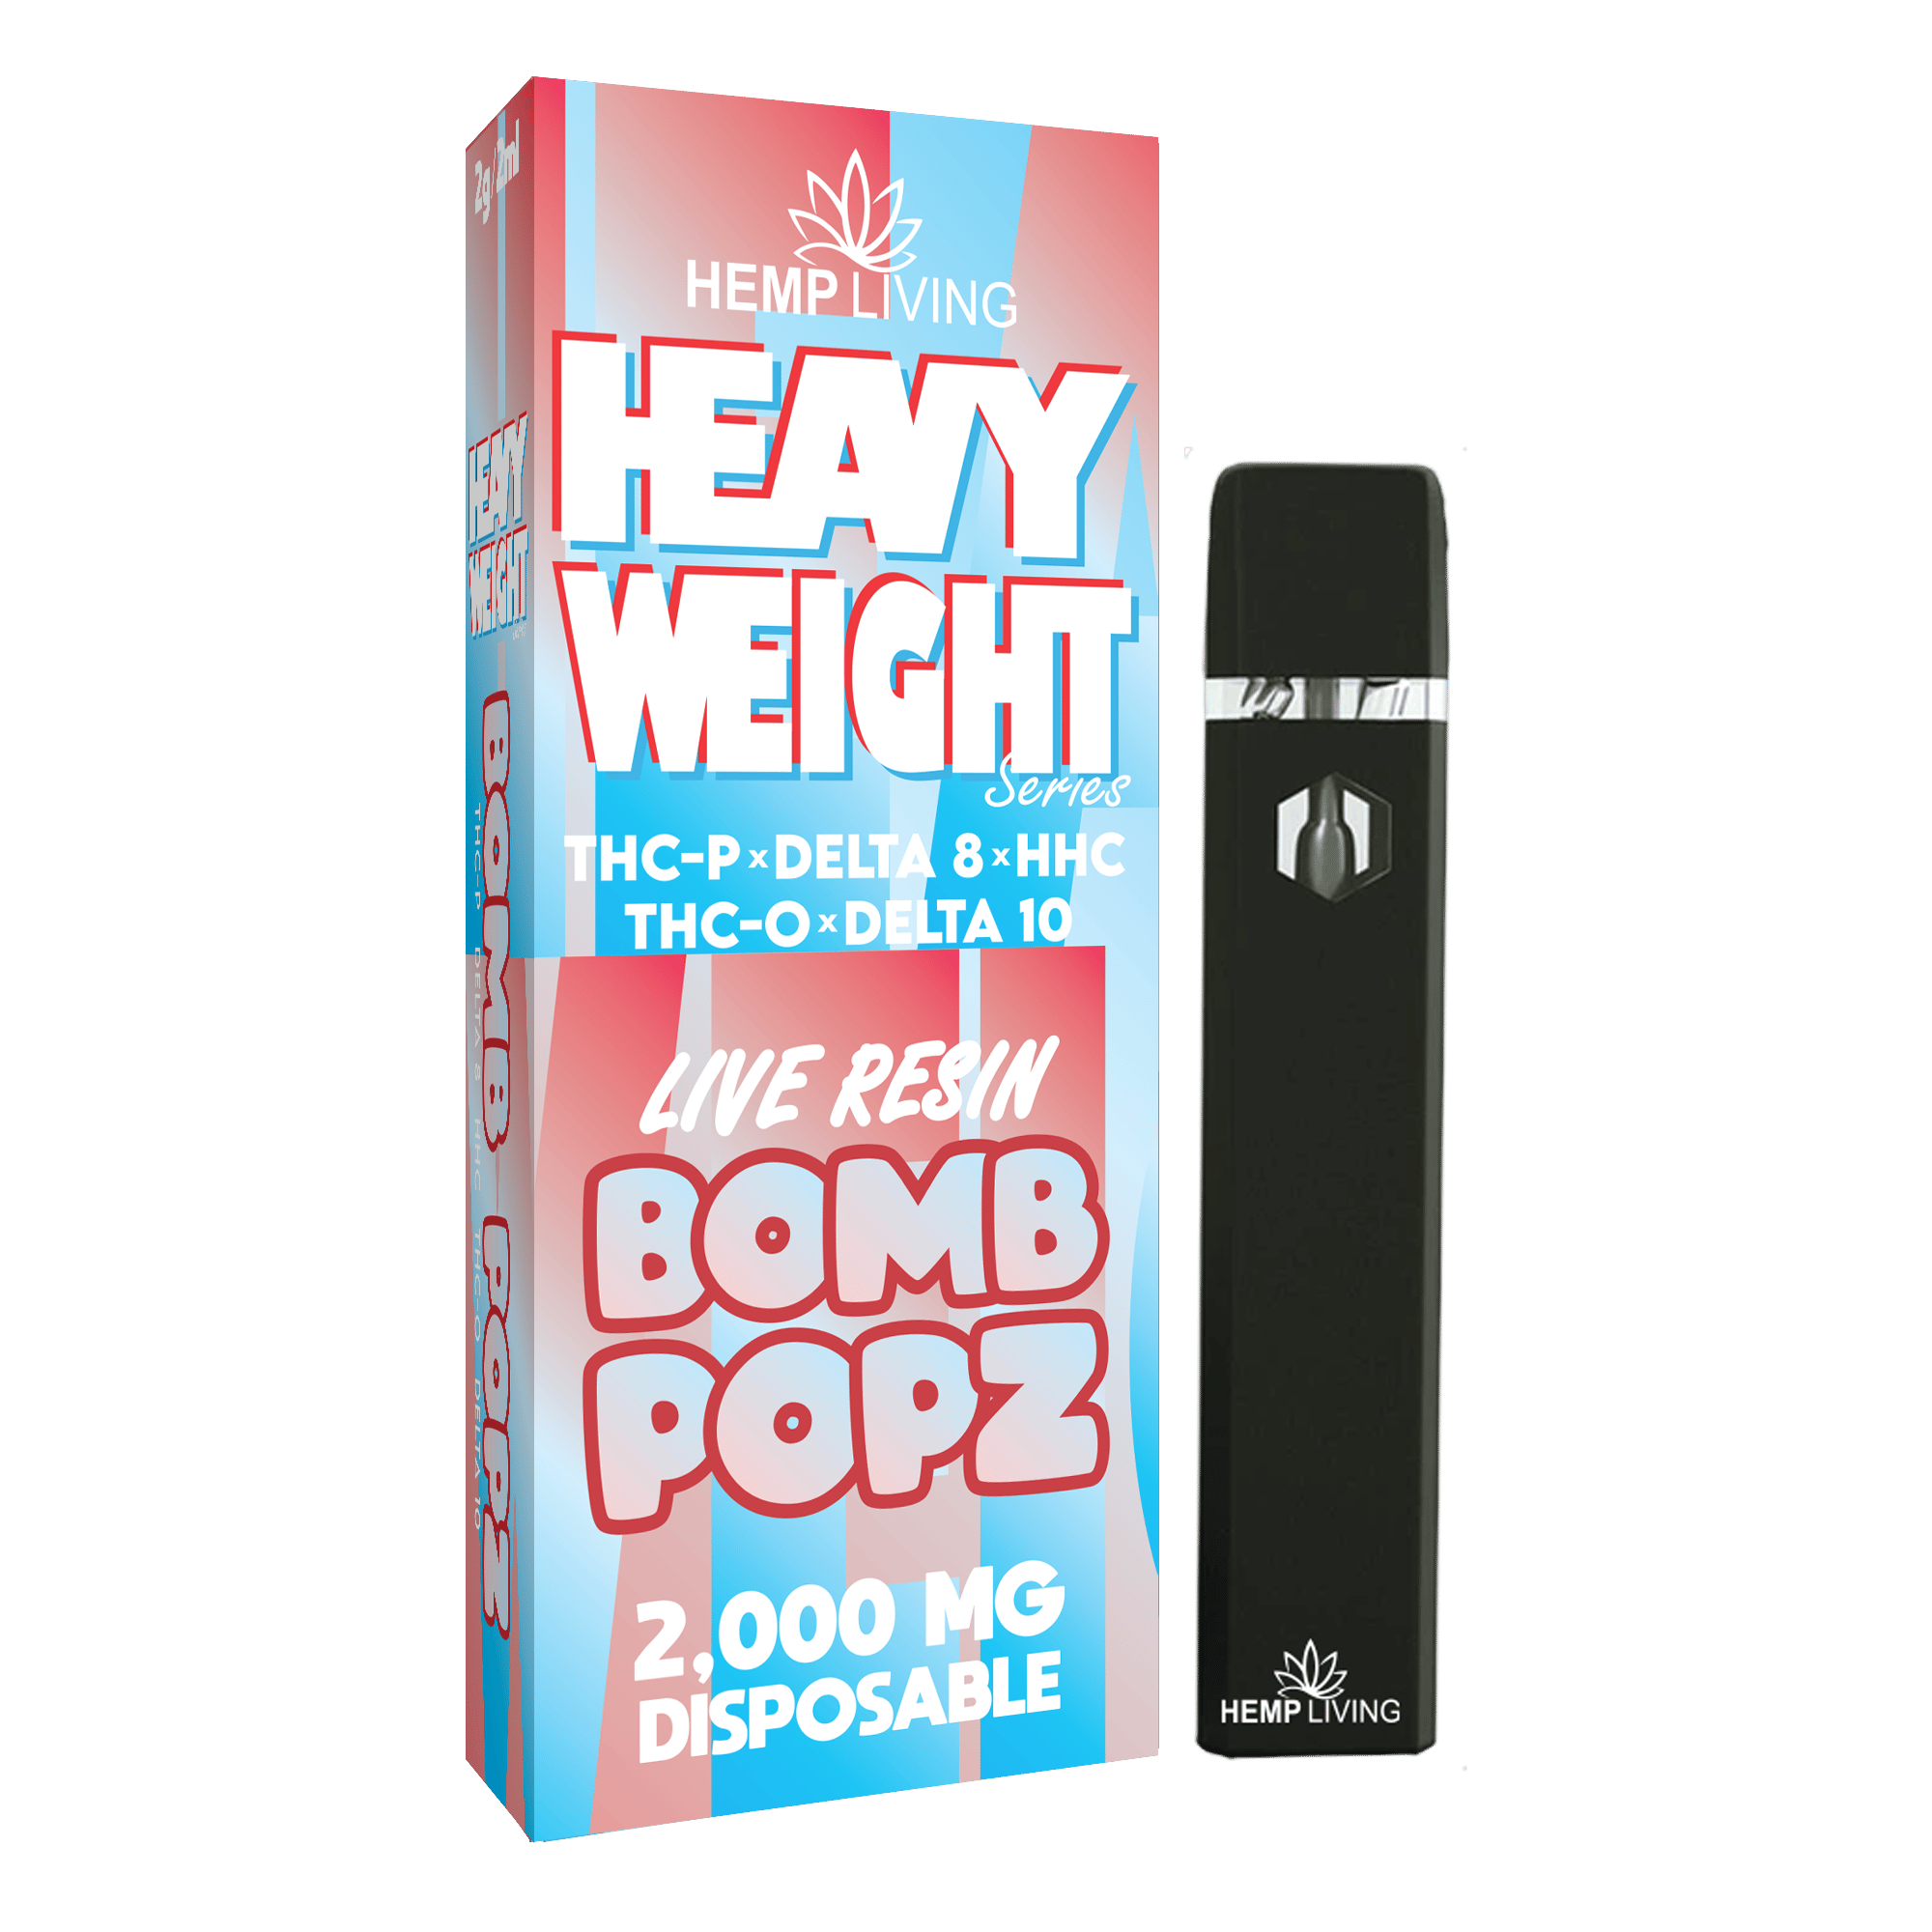 Hemp Living Heavy Weights Bomb Pop Disposable Blend | bee Hippy Hemp